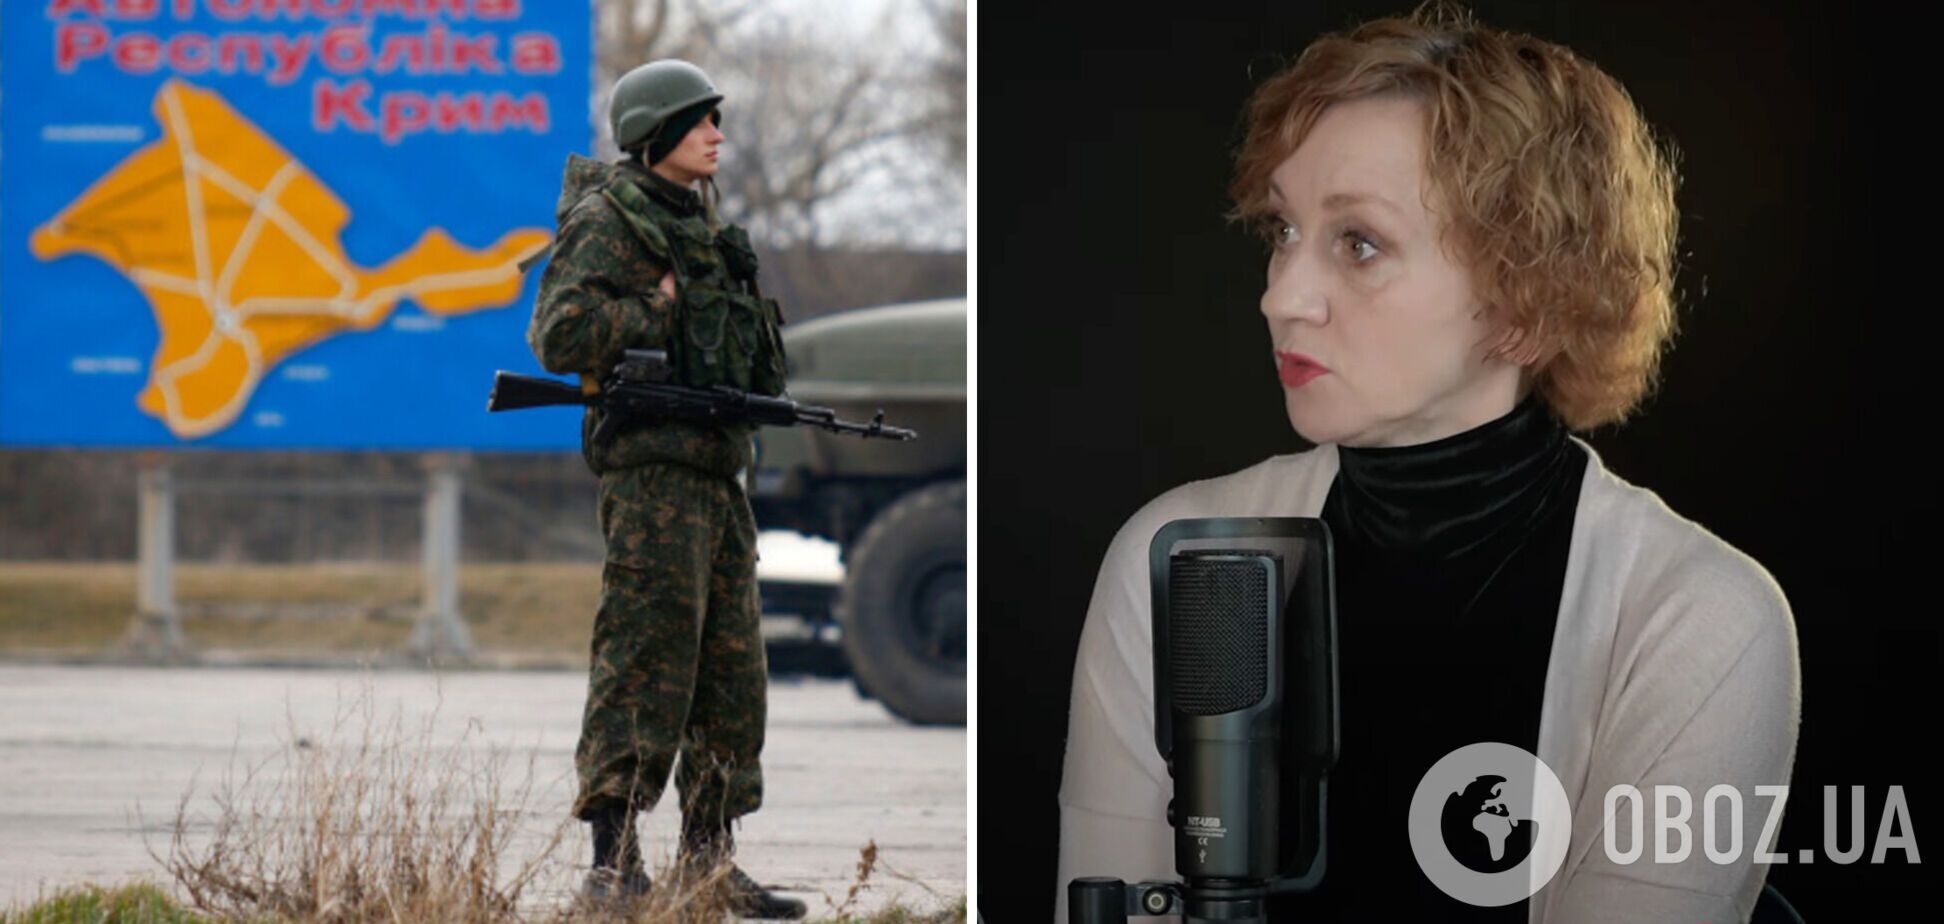 'Это проституция'. Зюбина, которая первой из украинских актрис отказалась от съемок с россиянами, рассказала о подставах в кино